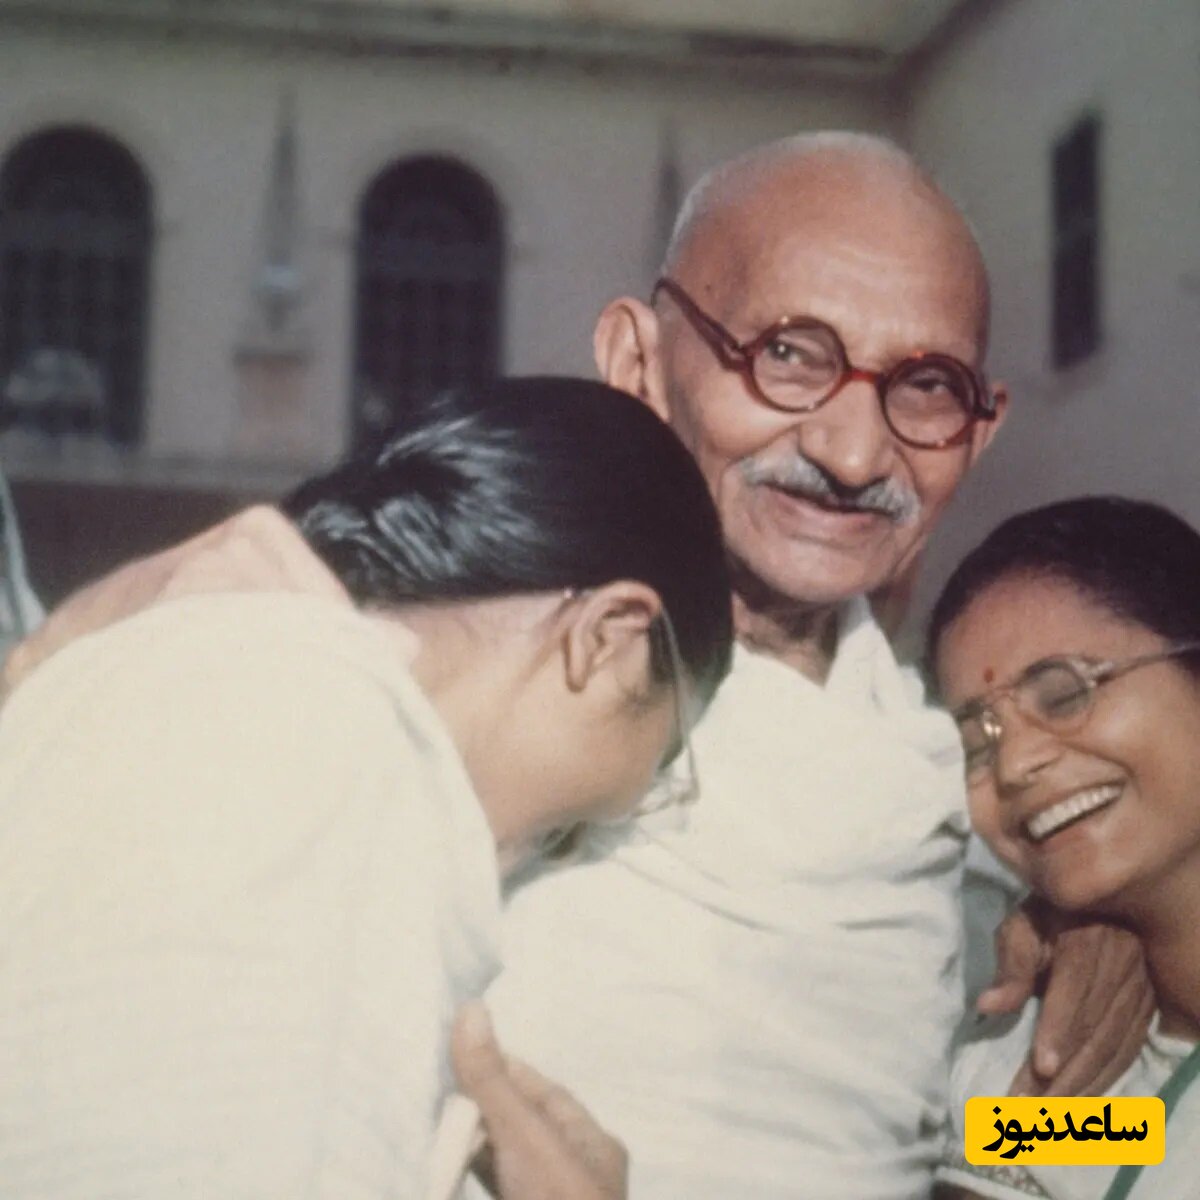 خلوت شبانه گاندی با دختران جوان در کهنسالی / سرِ پیری و معرکه گیری؟!